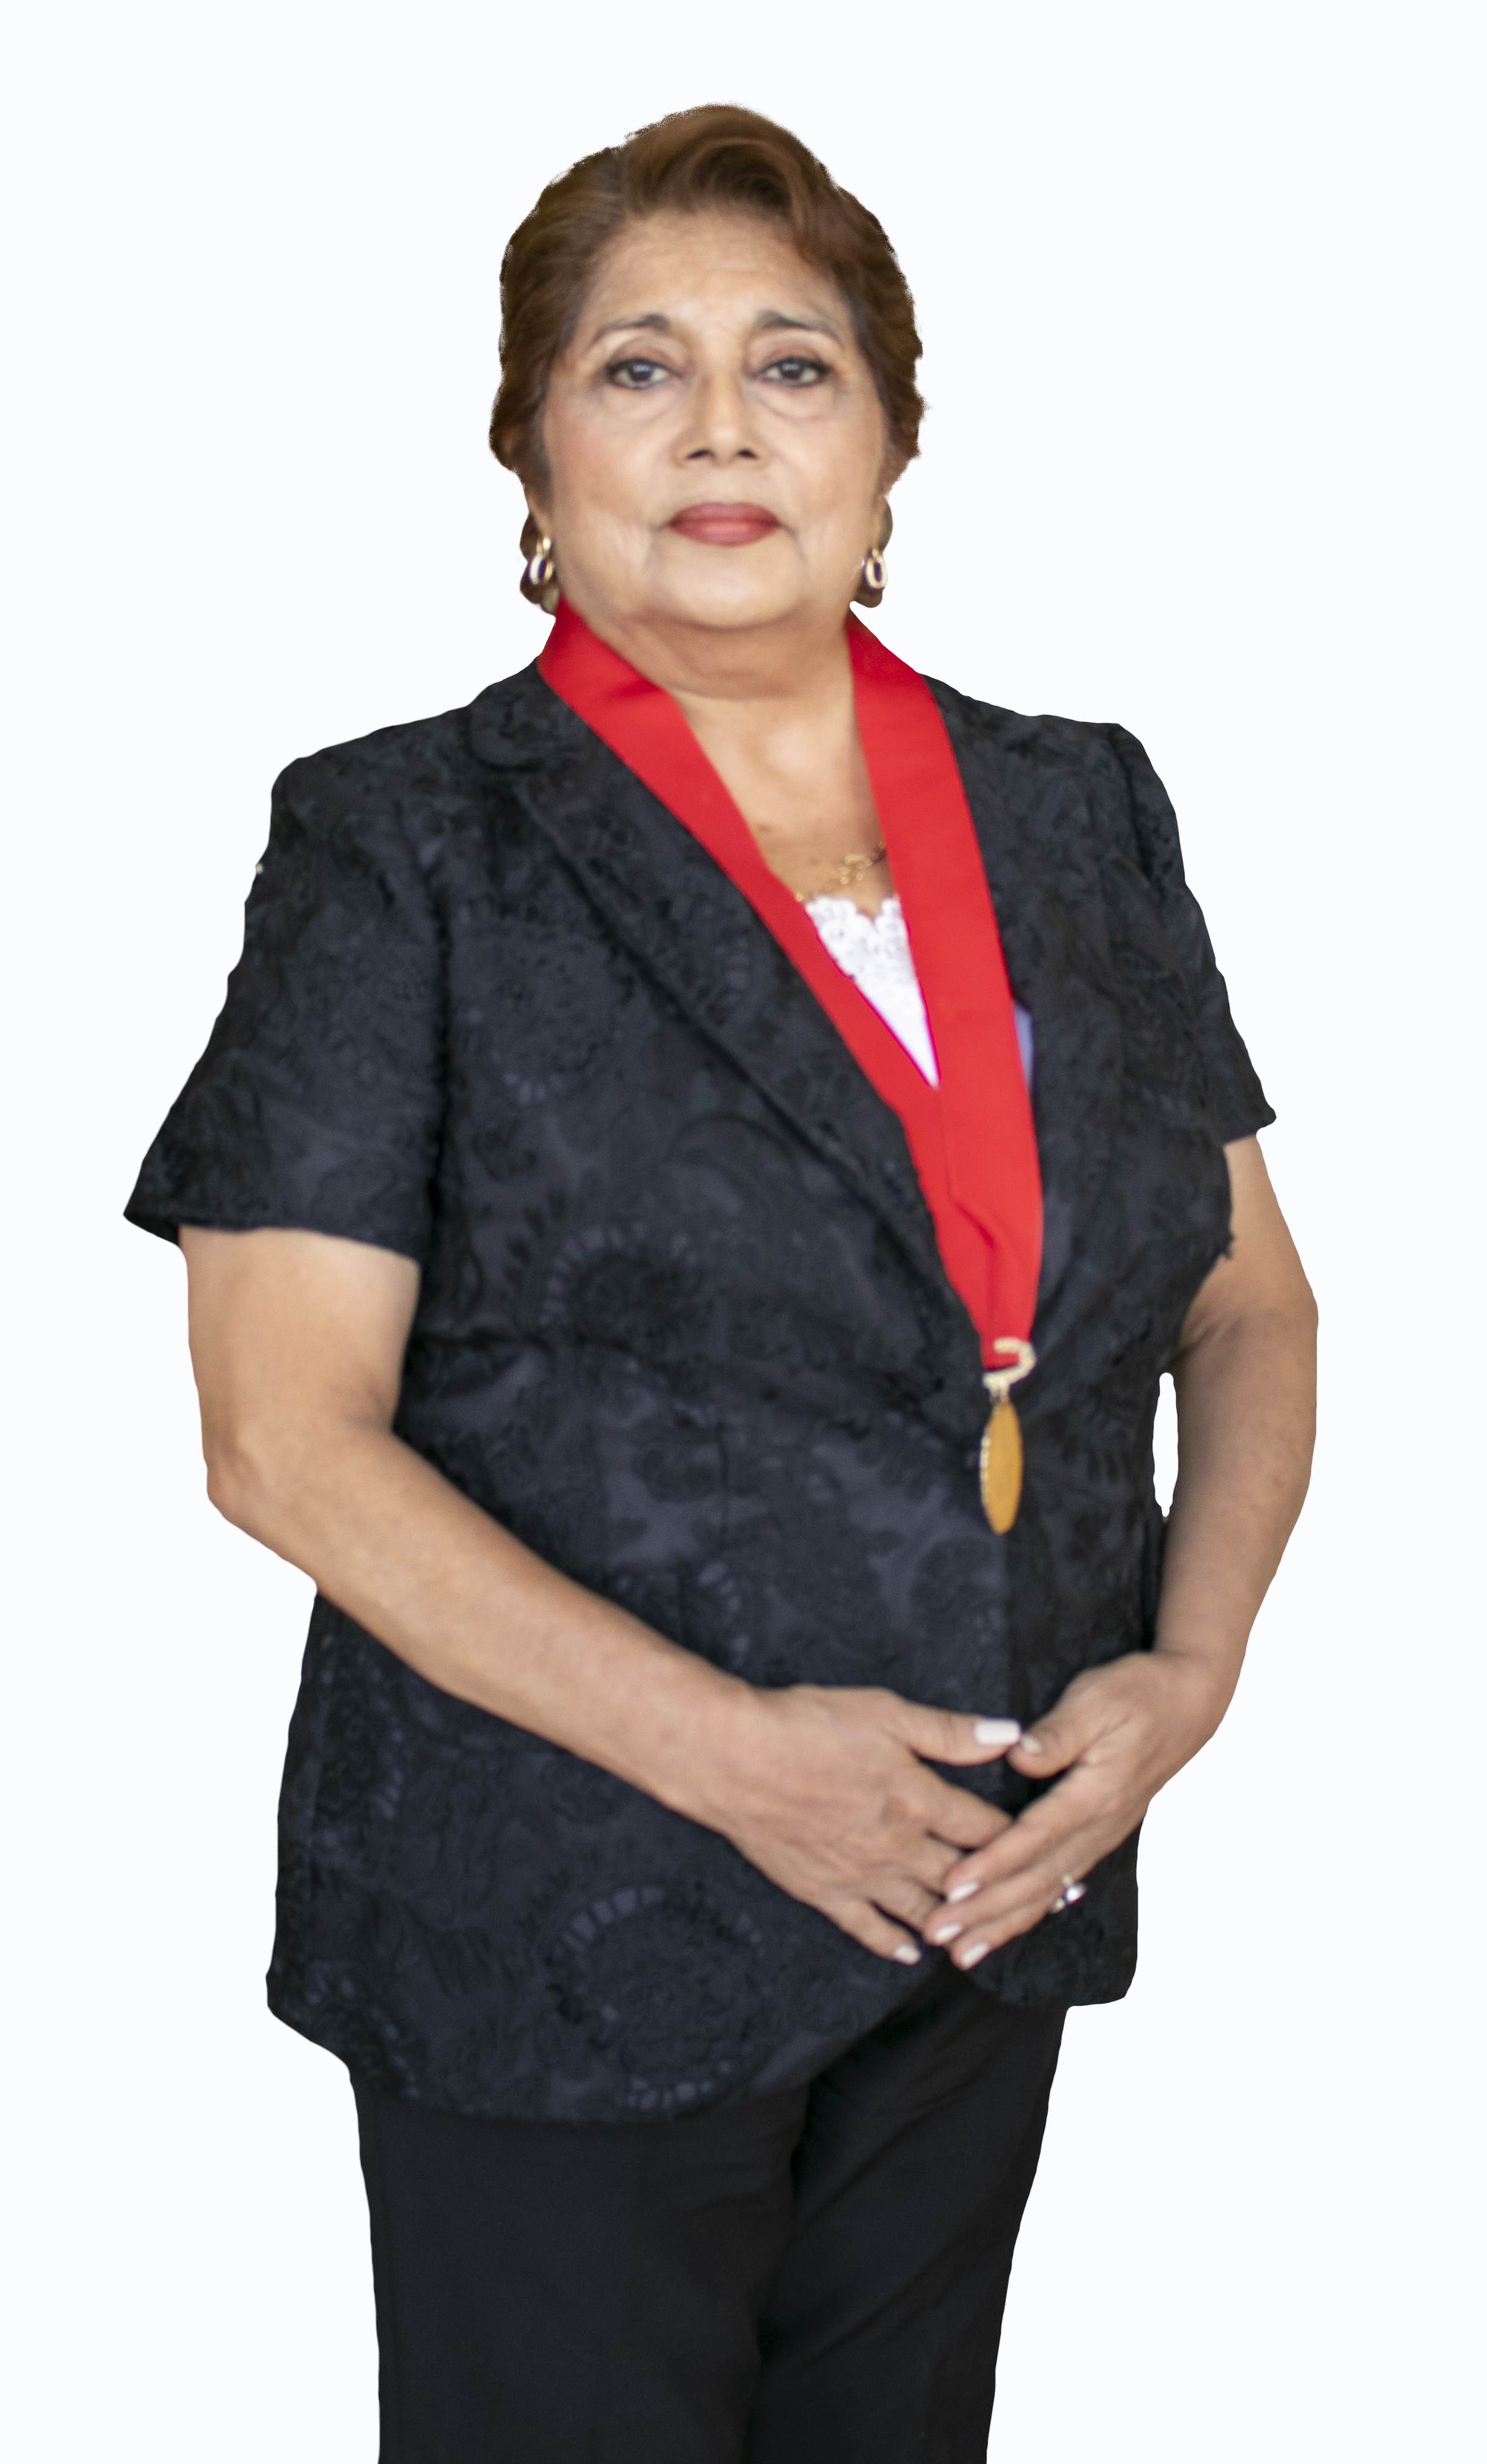 Maria Betty Rodriguez Llontop